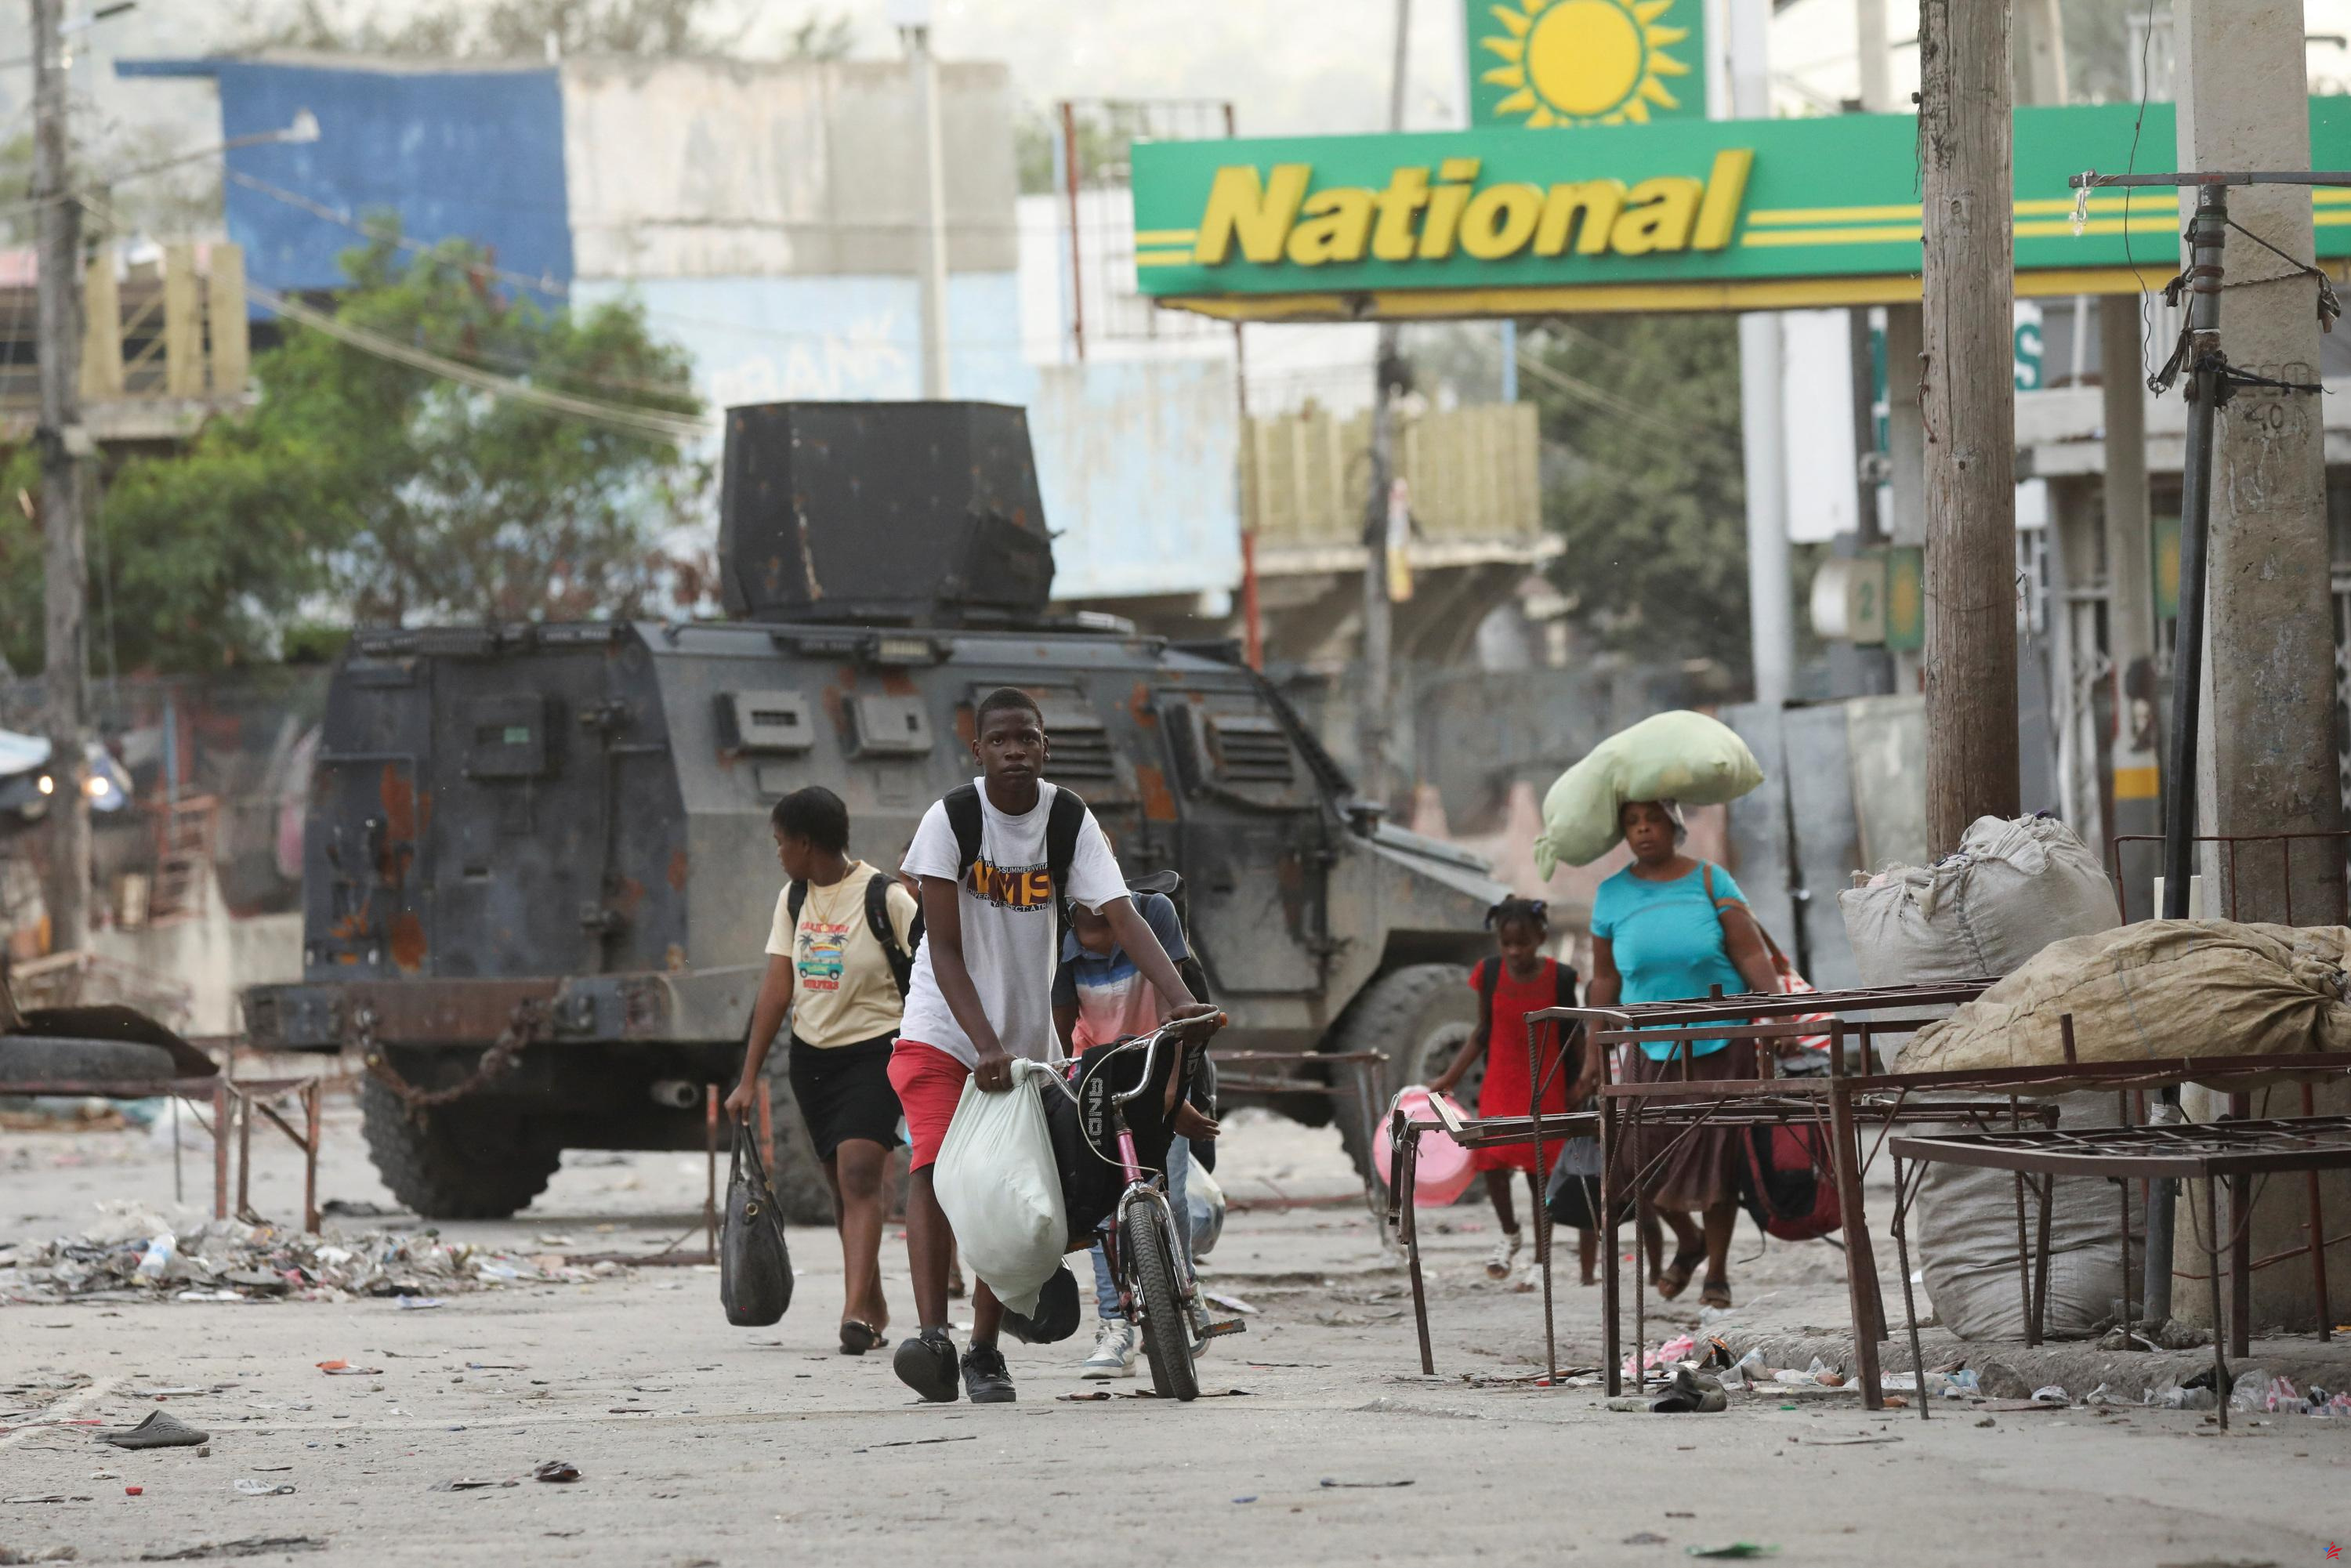 Haití: cuatro policías muertos en intercambios de disparos con pandillas